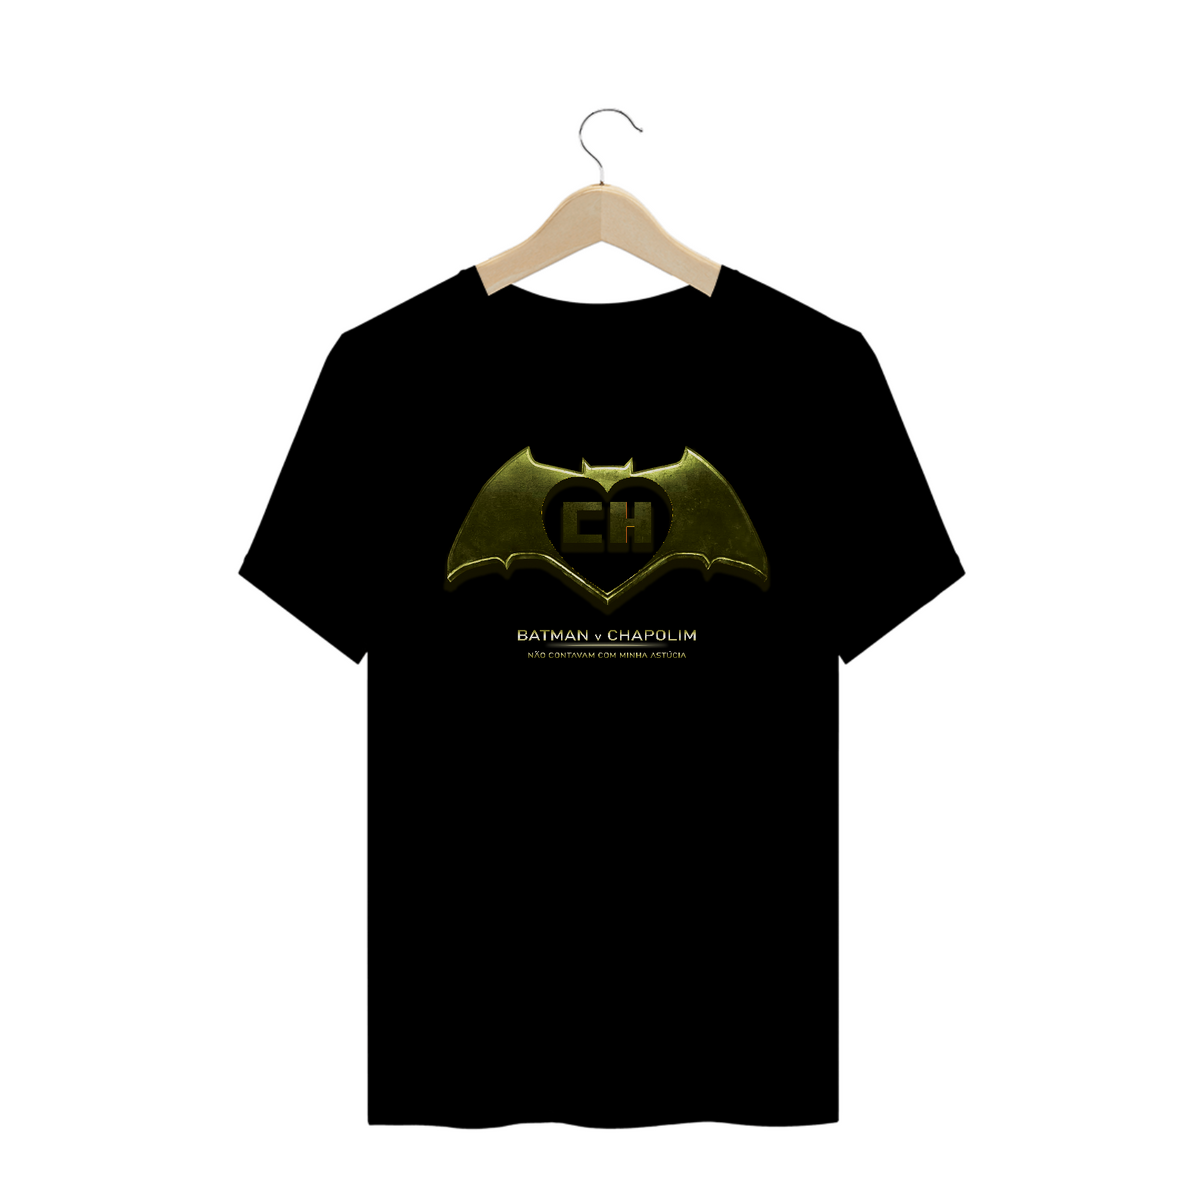 Nome do produto: Camiseta Batman v Chapolim v2